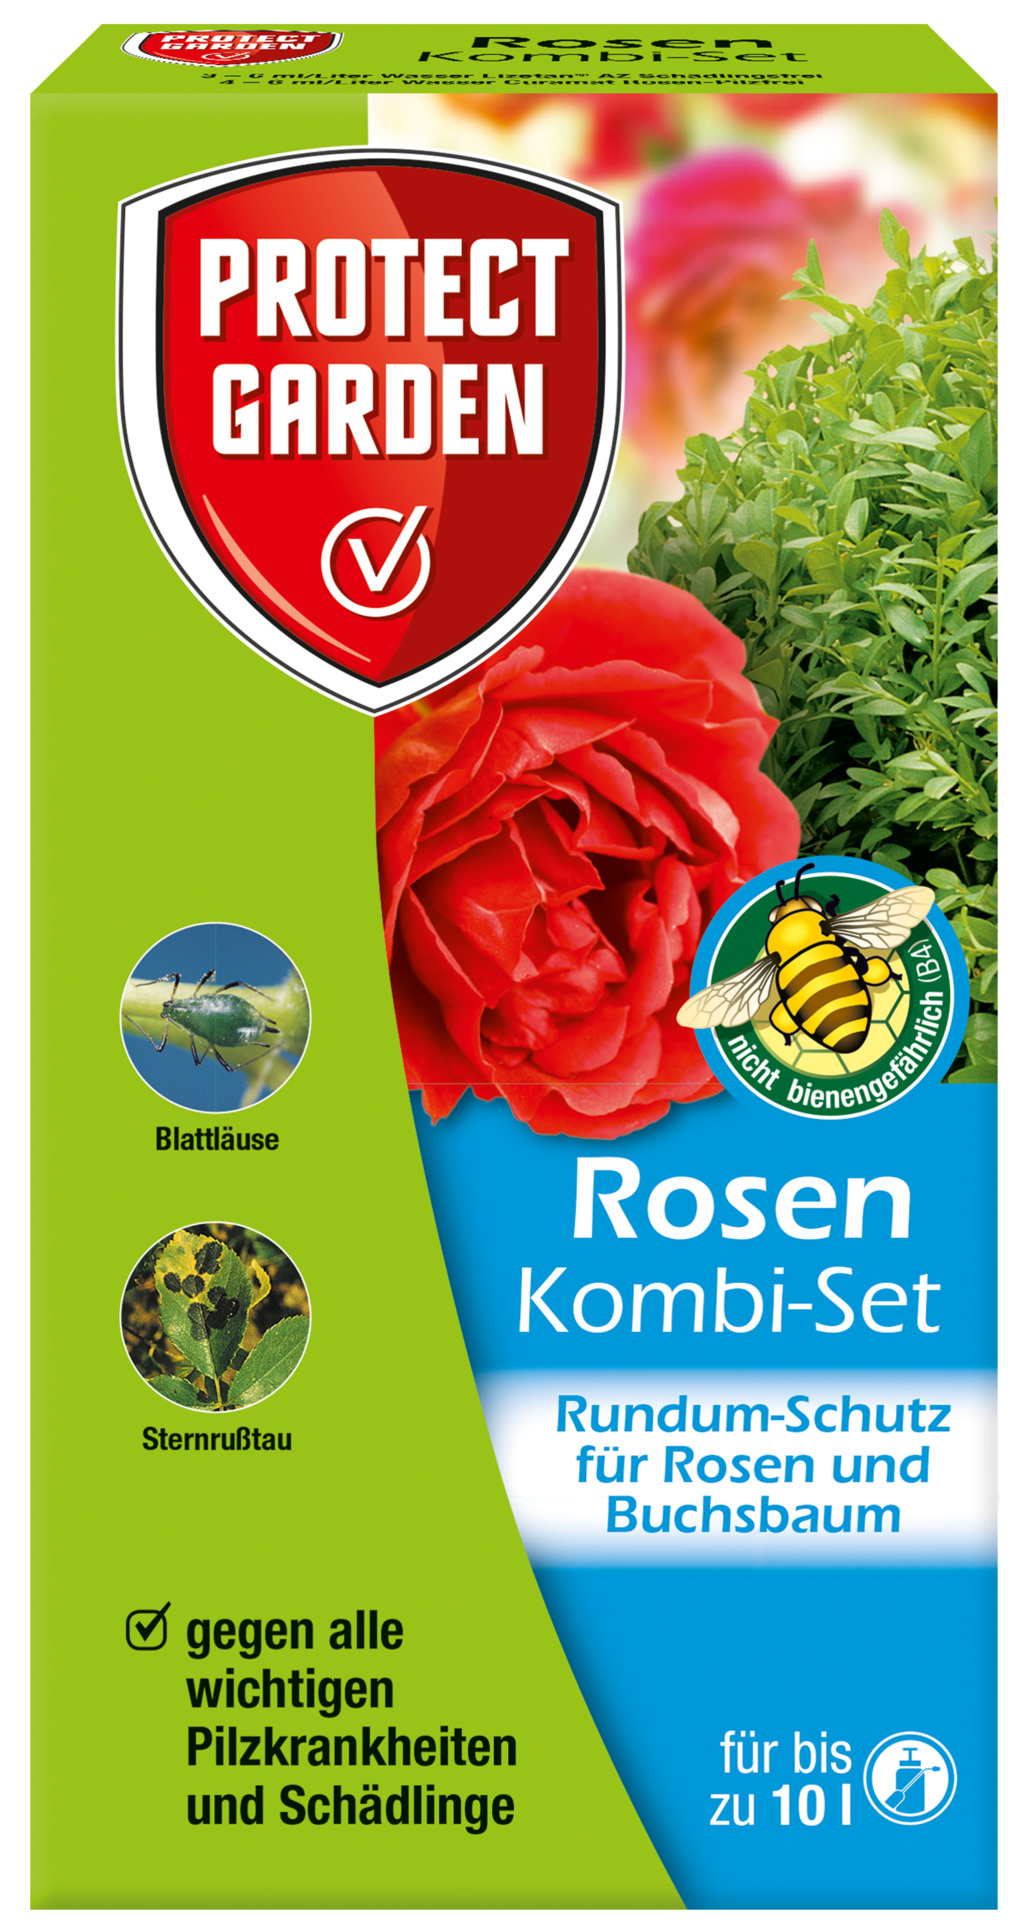 Rosen Kombi-Set